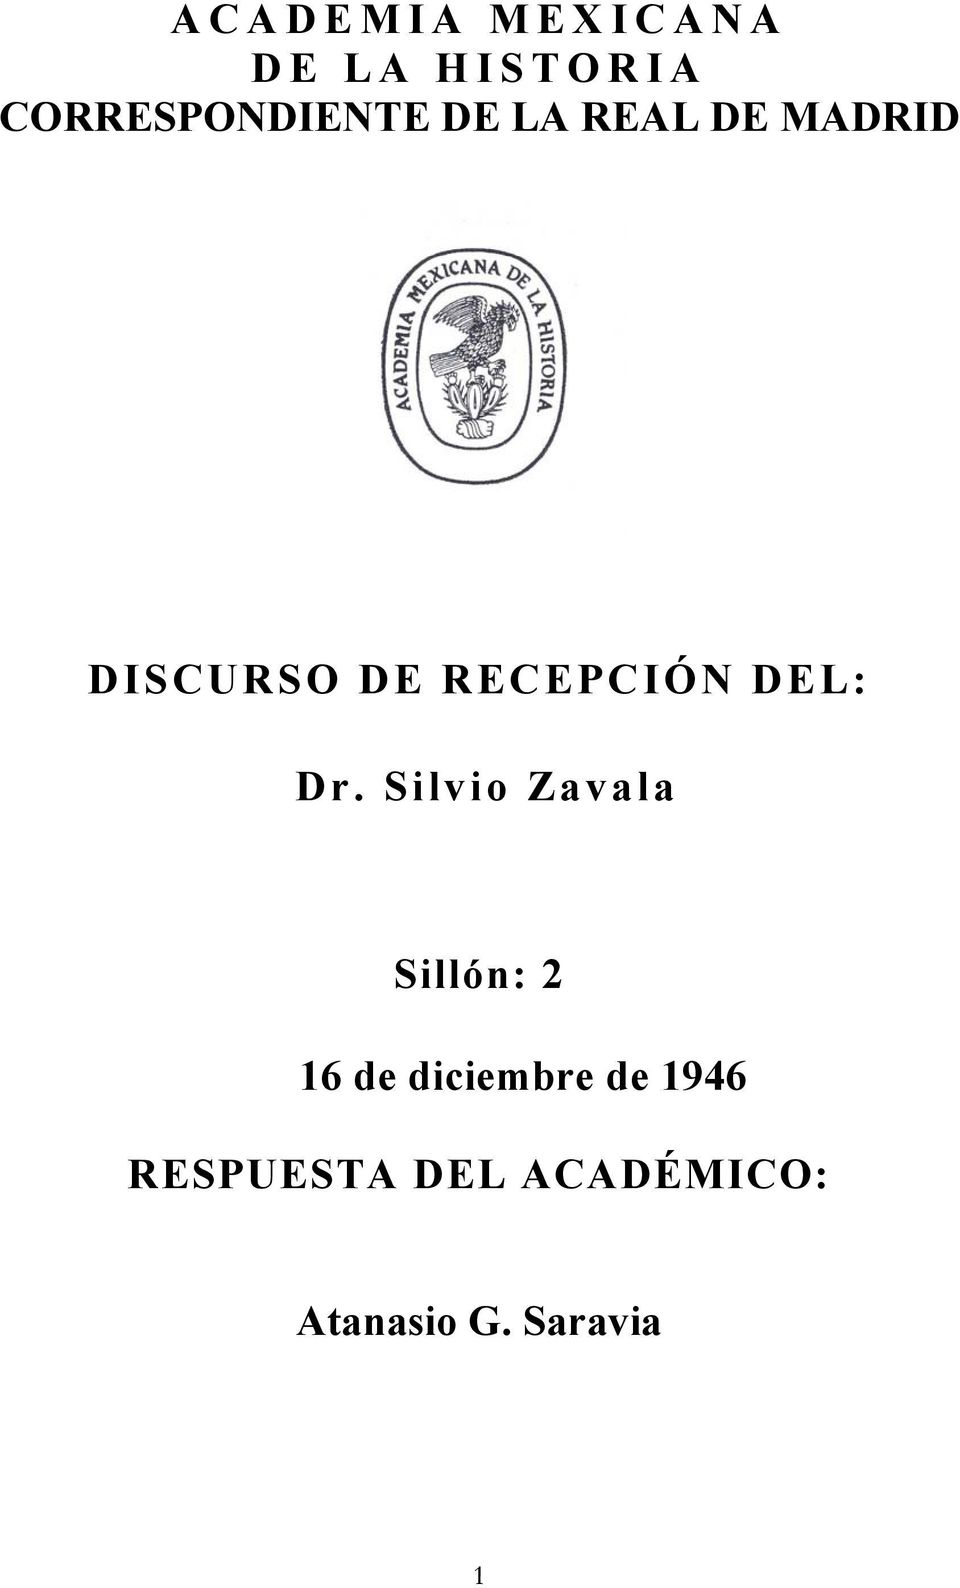 Dr. Silvio Zavala Sillón: 2 16 de diciembre de